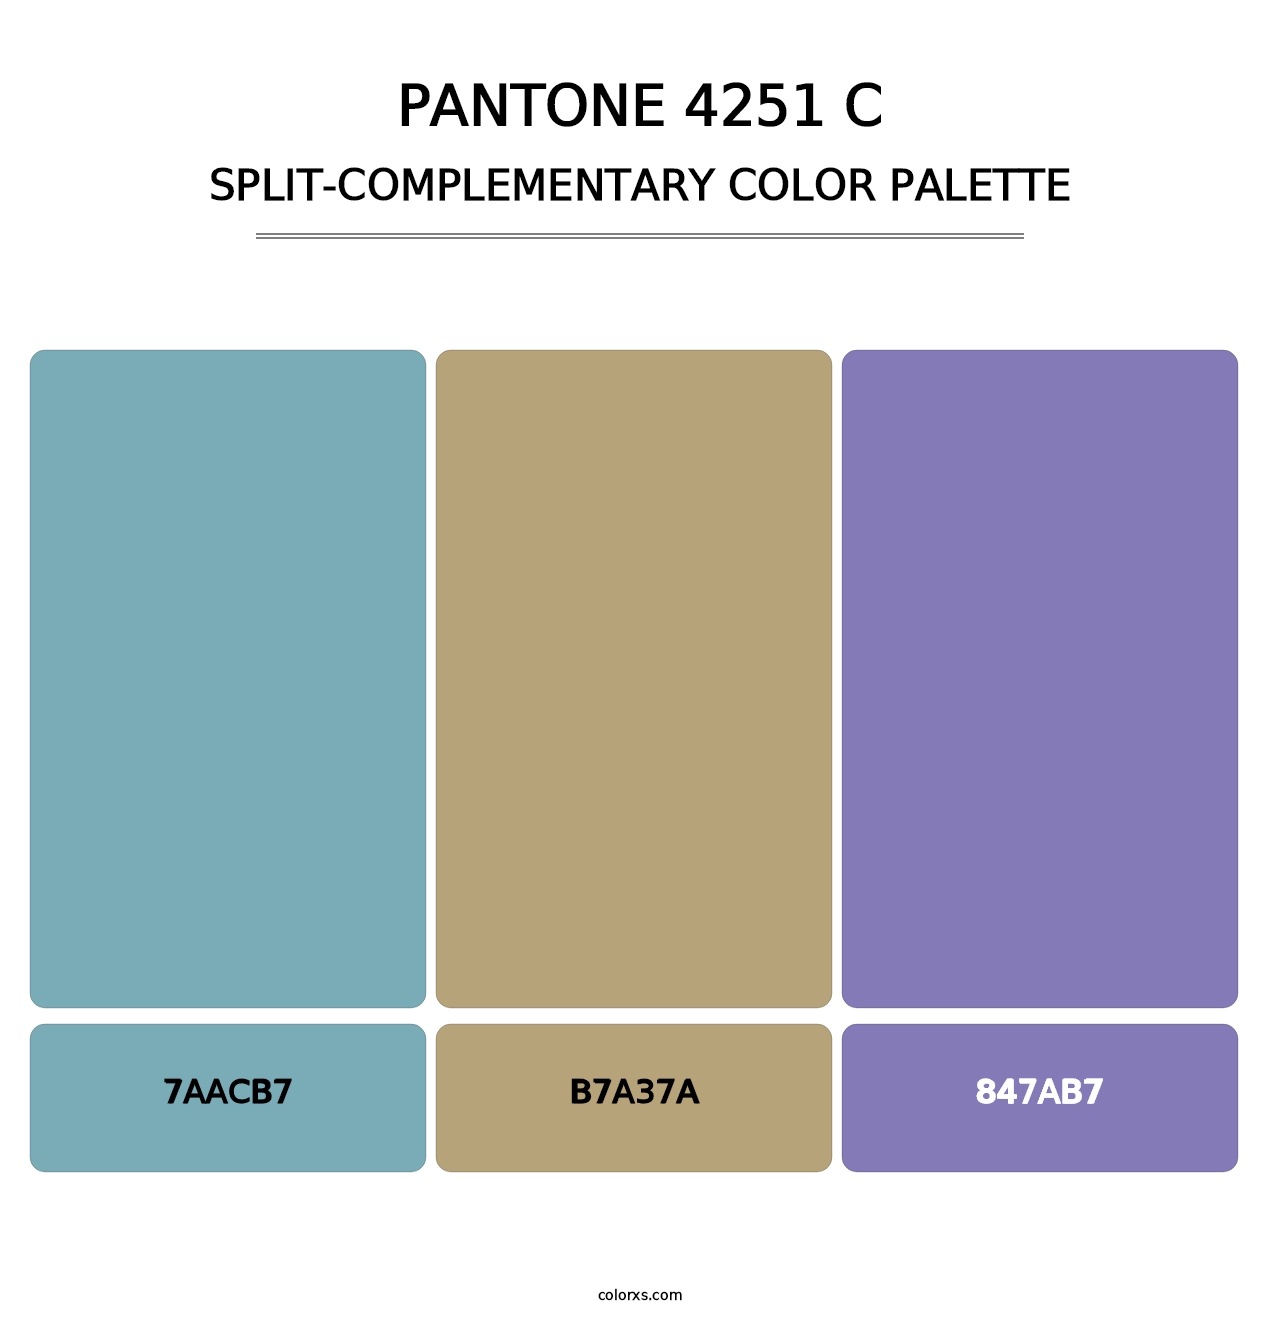 PANTONE 4251 C - Split-Complementary Color Palette